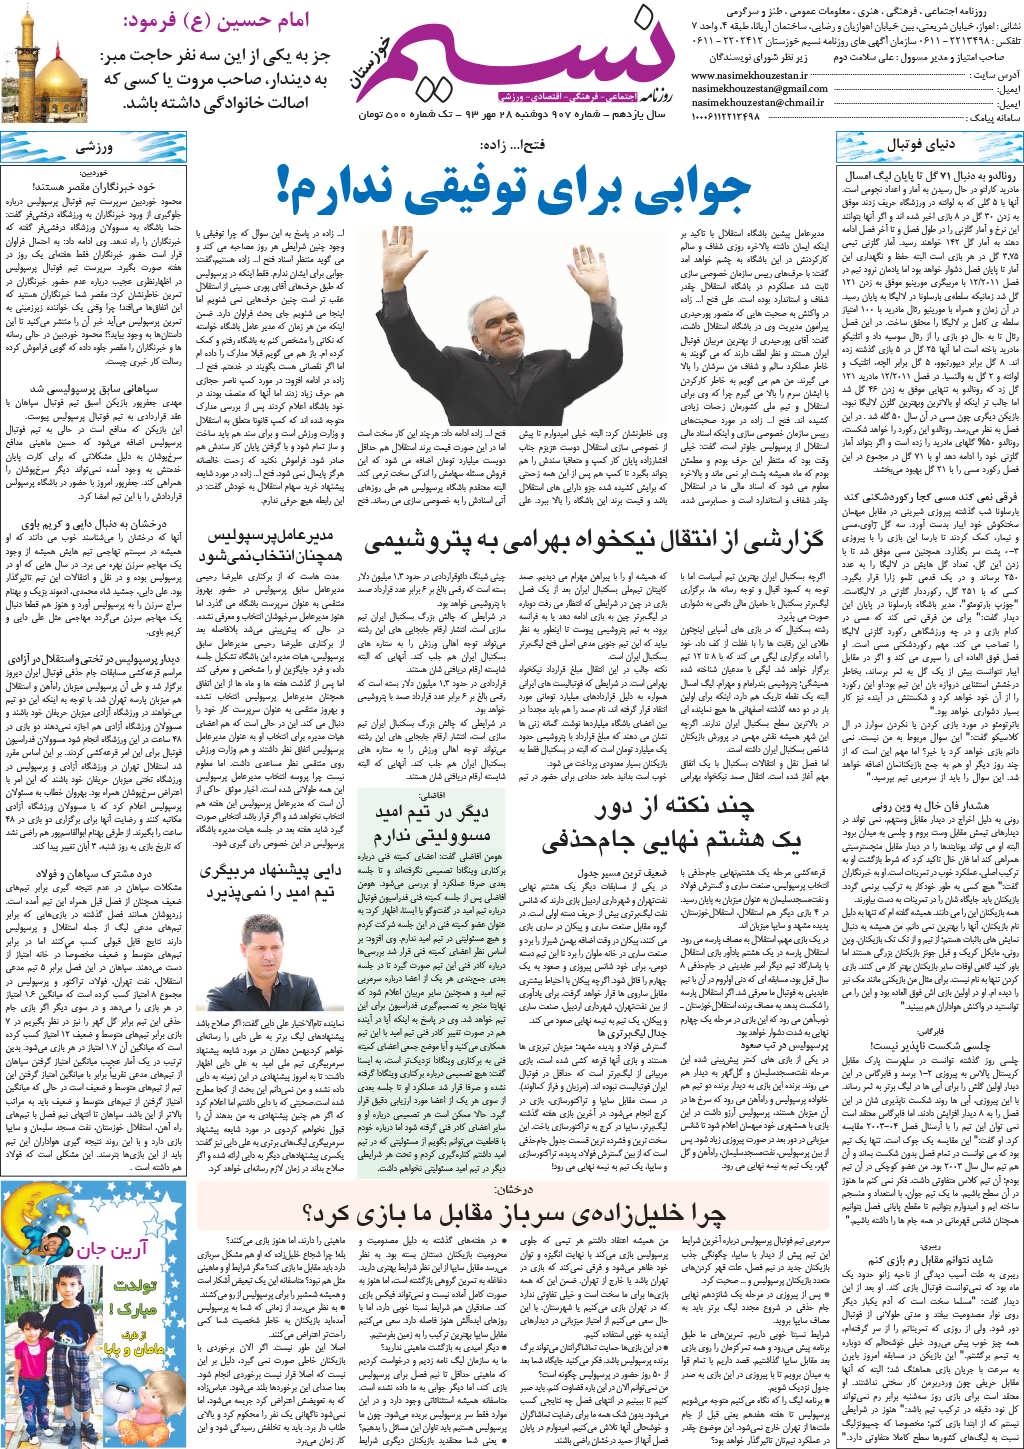 صفحه آخر روزنامه نسیم شماره 907